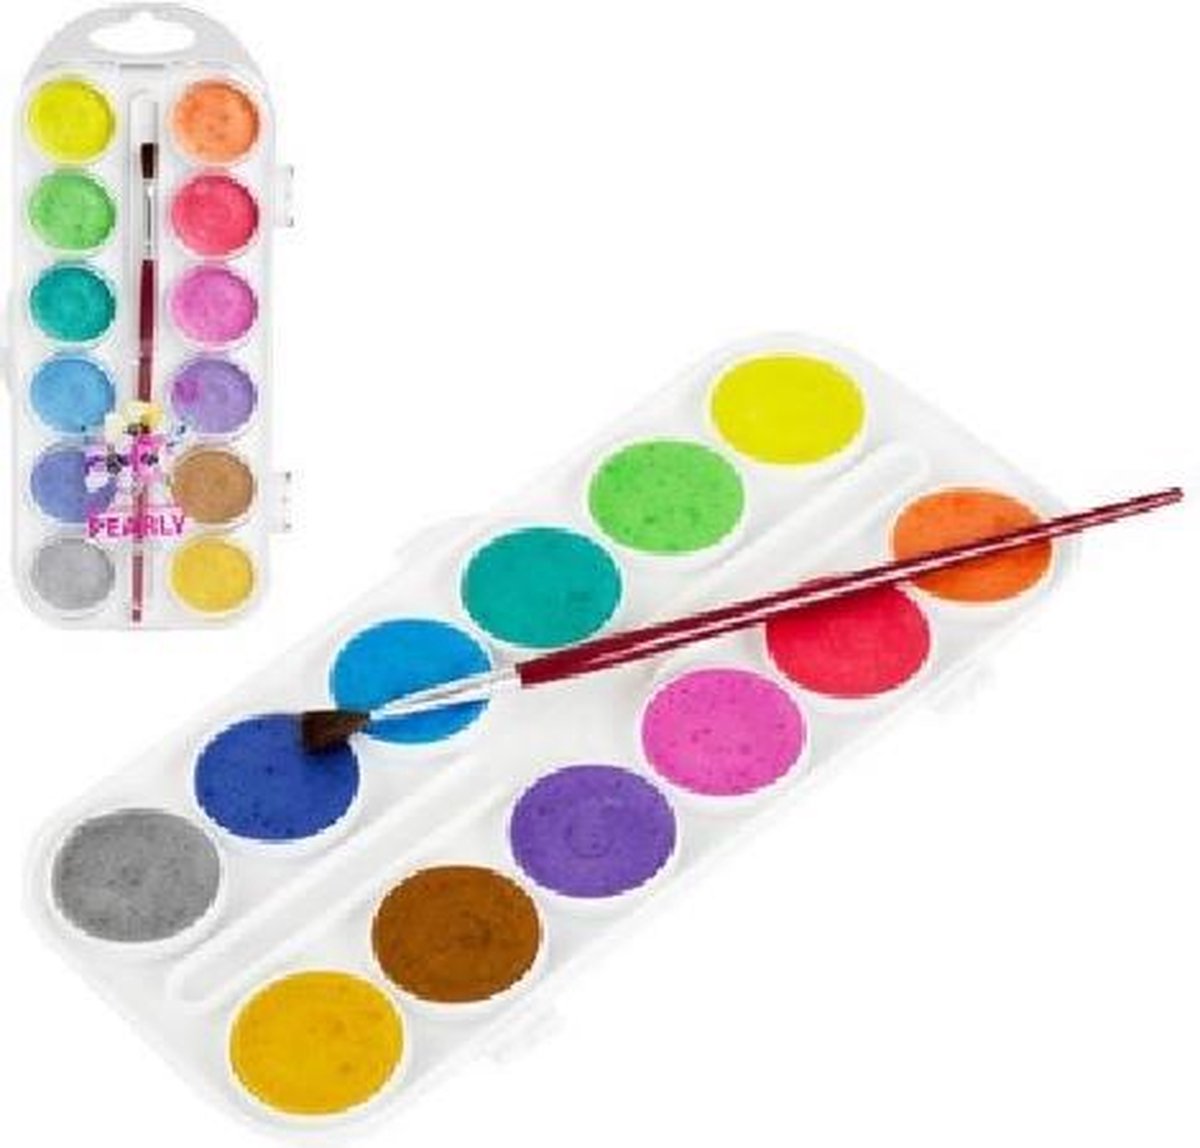 Waterverfset Parelmoer – 12 kleurtjes met penseel